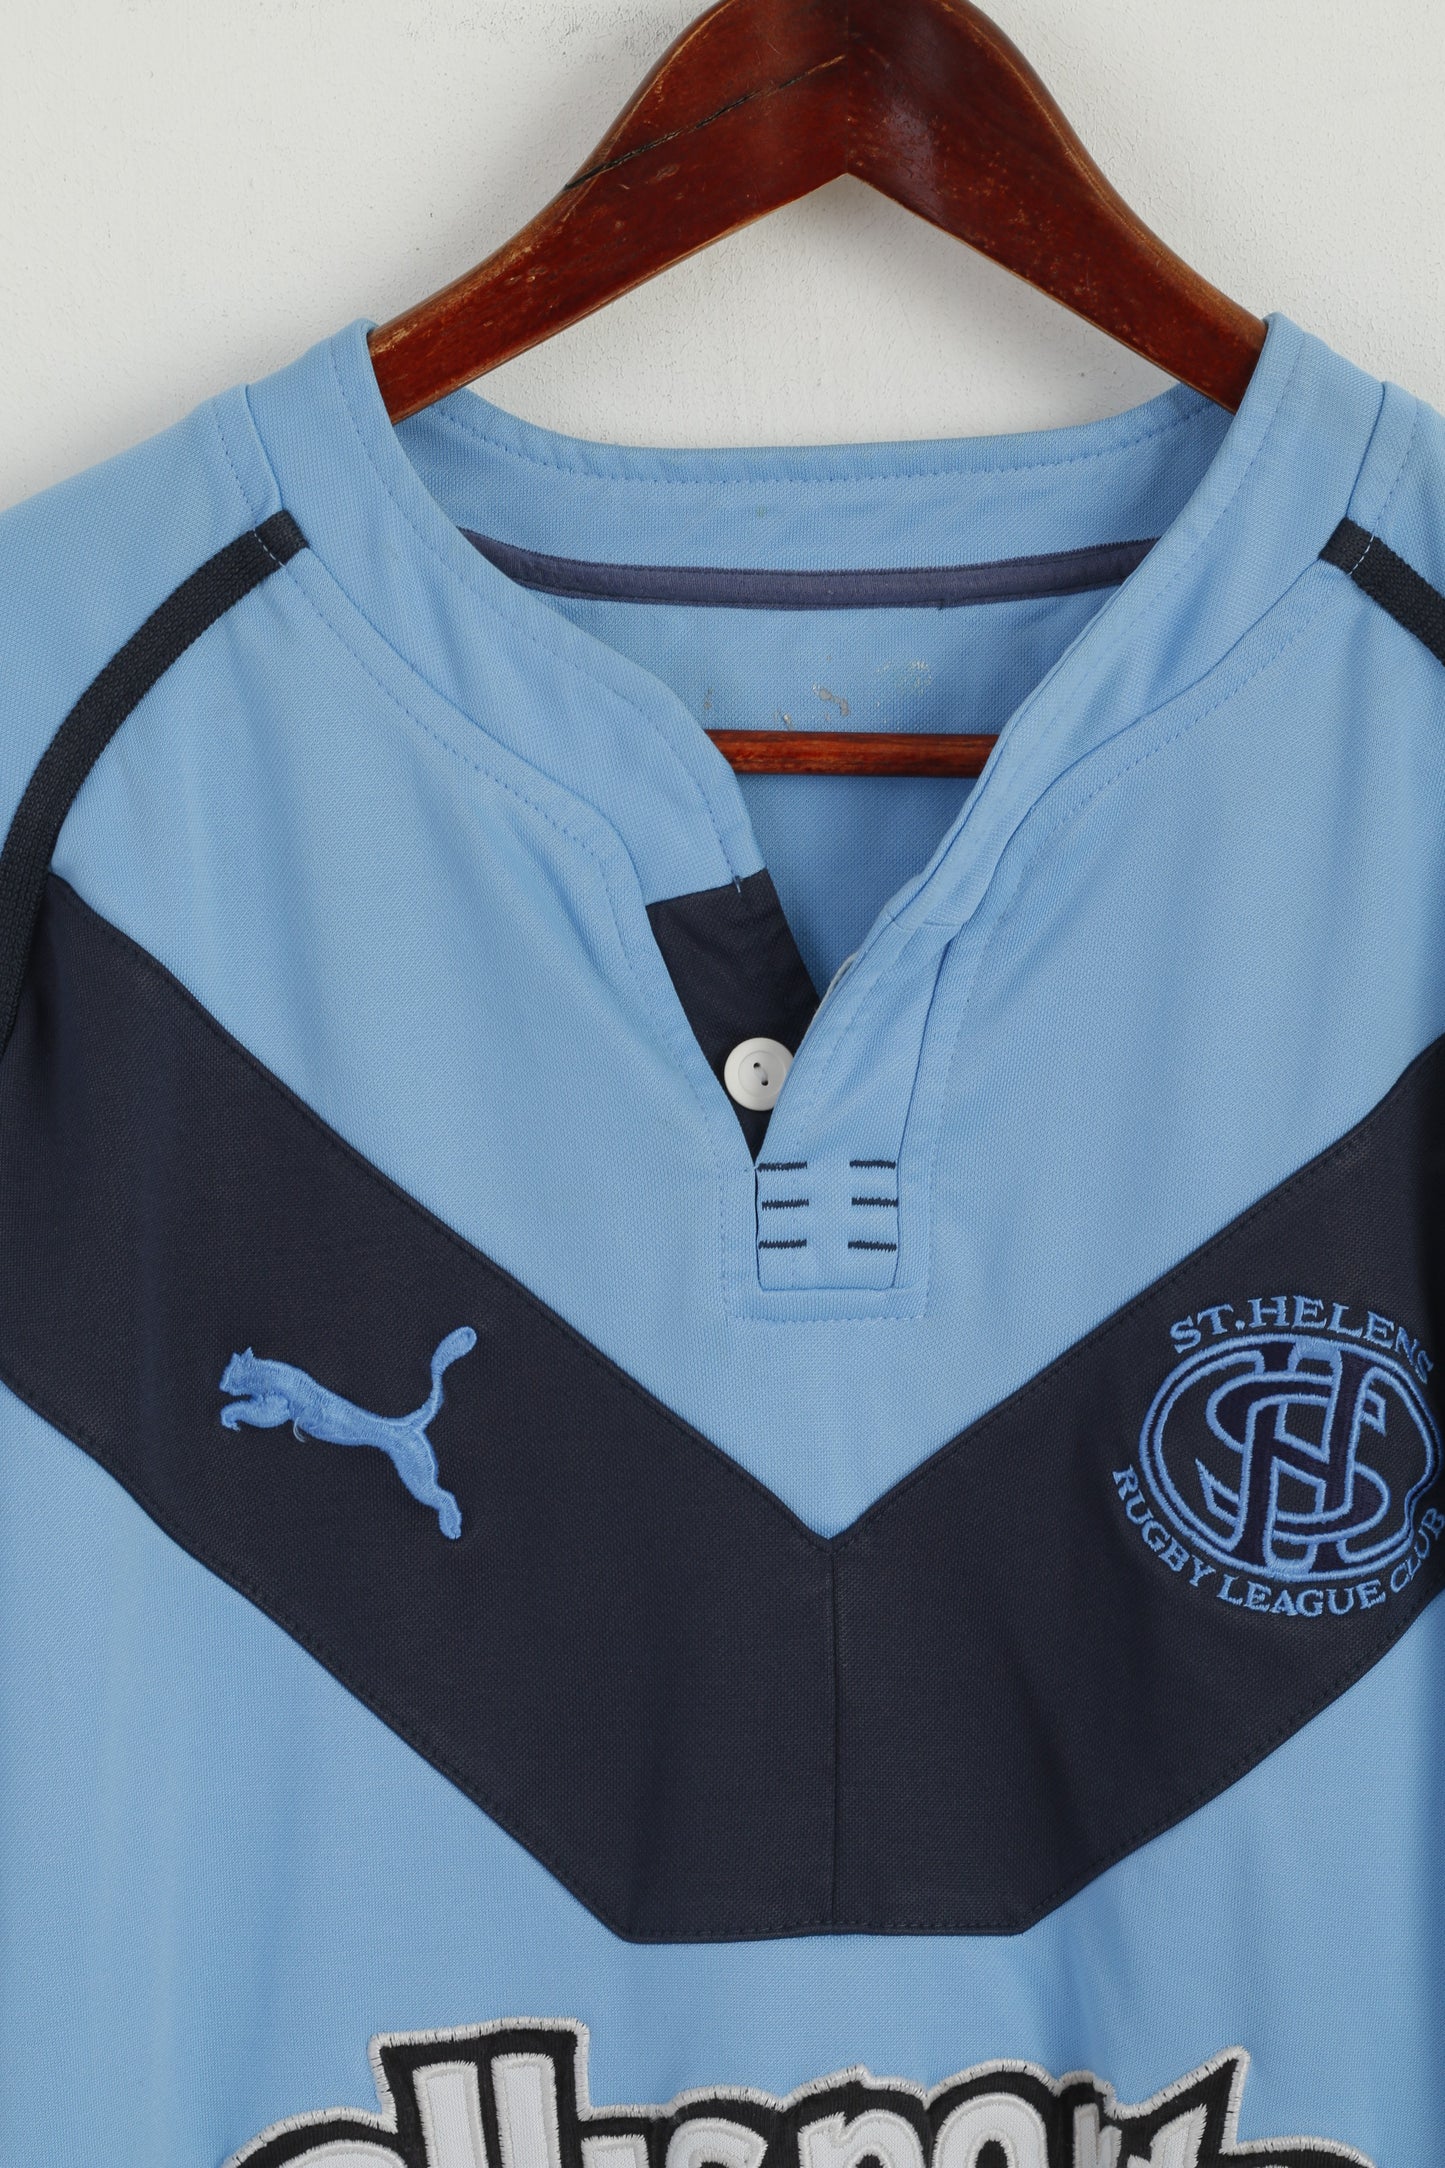 Puma Men M Shirt Blue St. Helens Rugby League Club Sport Short Sleeve Top